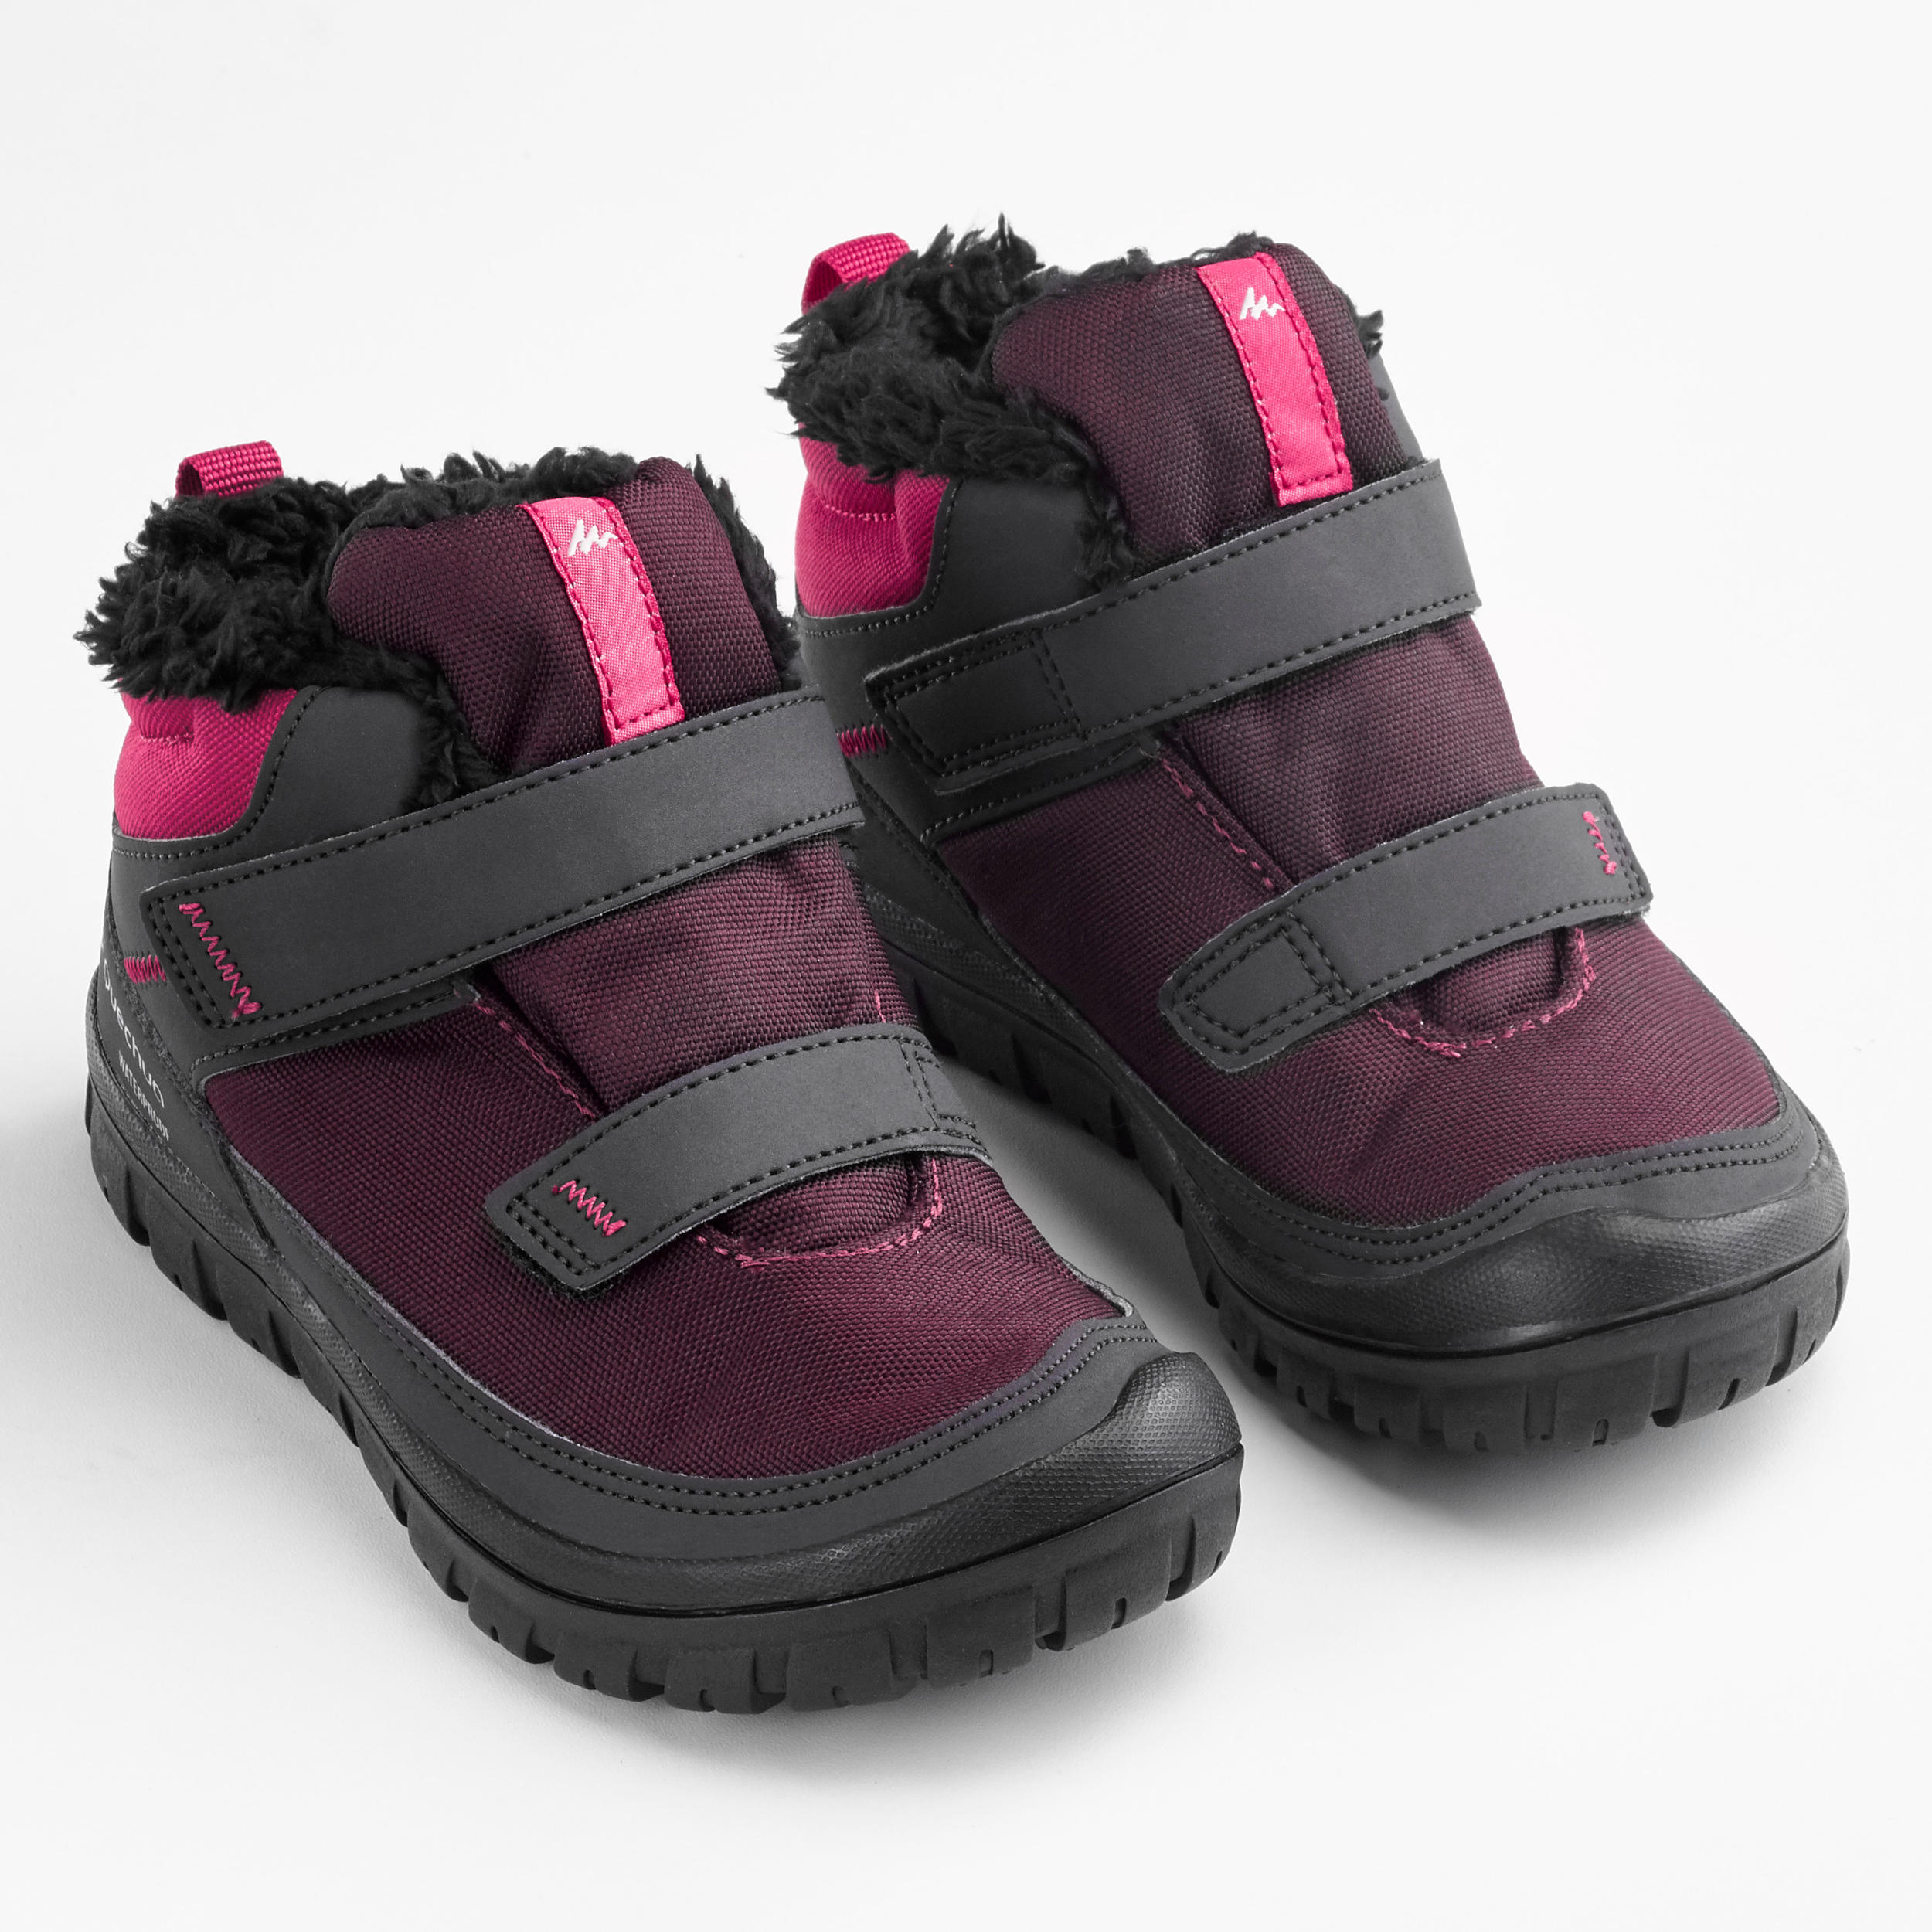 Kids' Waterproof Hiking Boots – SH 100 Plum/Pink - QUECHUA